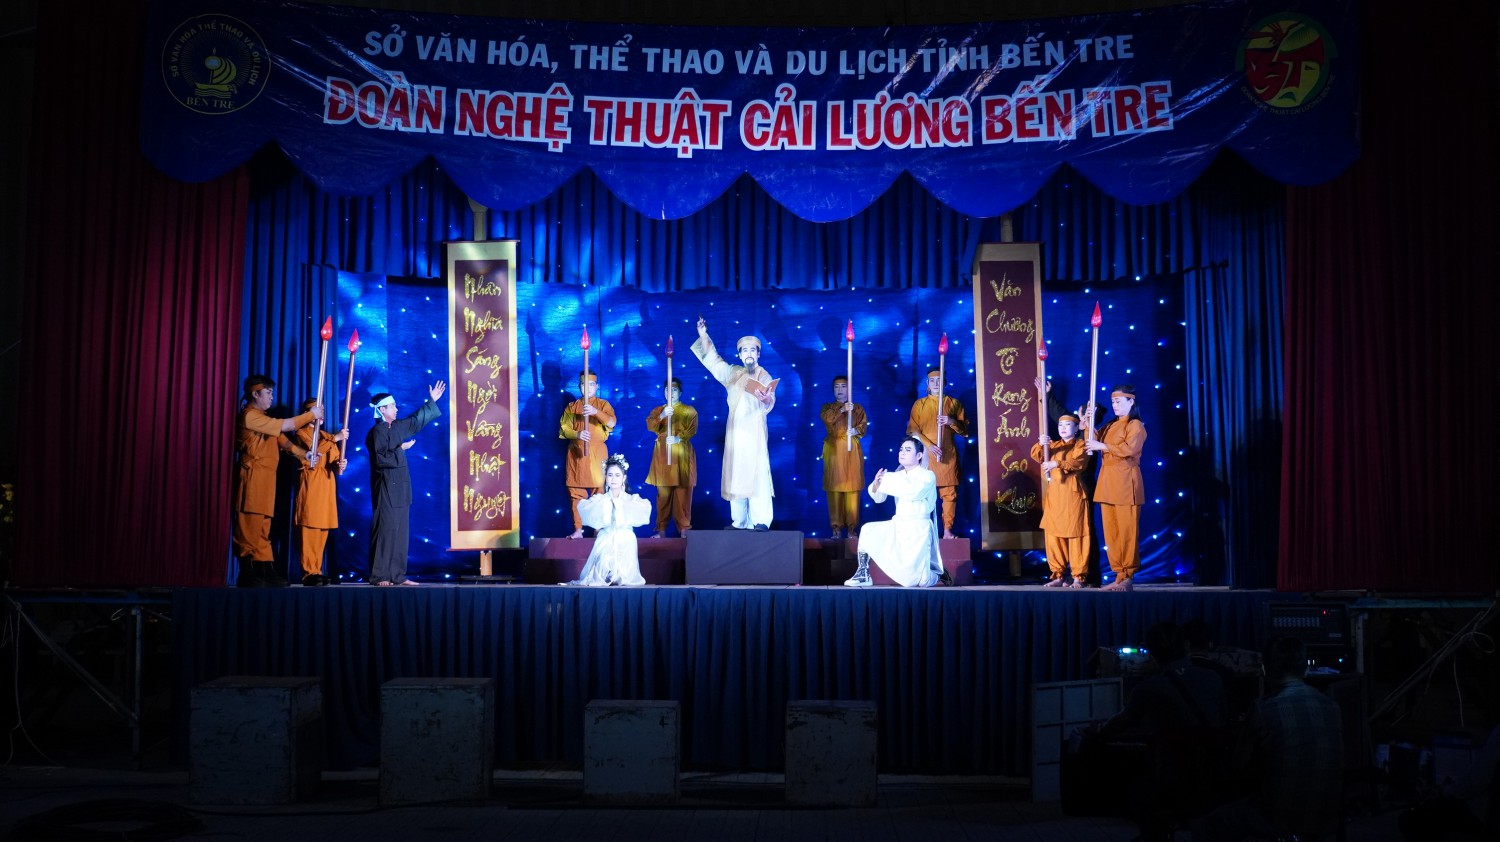 Đoàn Nghệ thuật Cải lương tỉnh Bến Tre biểu diễn nghệ thuật Cải lương phục vụ cán bộ, chiến sĩ và Nhân dân huyện Tân Biên